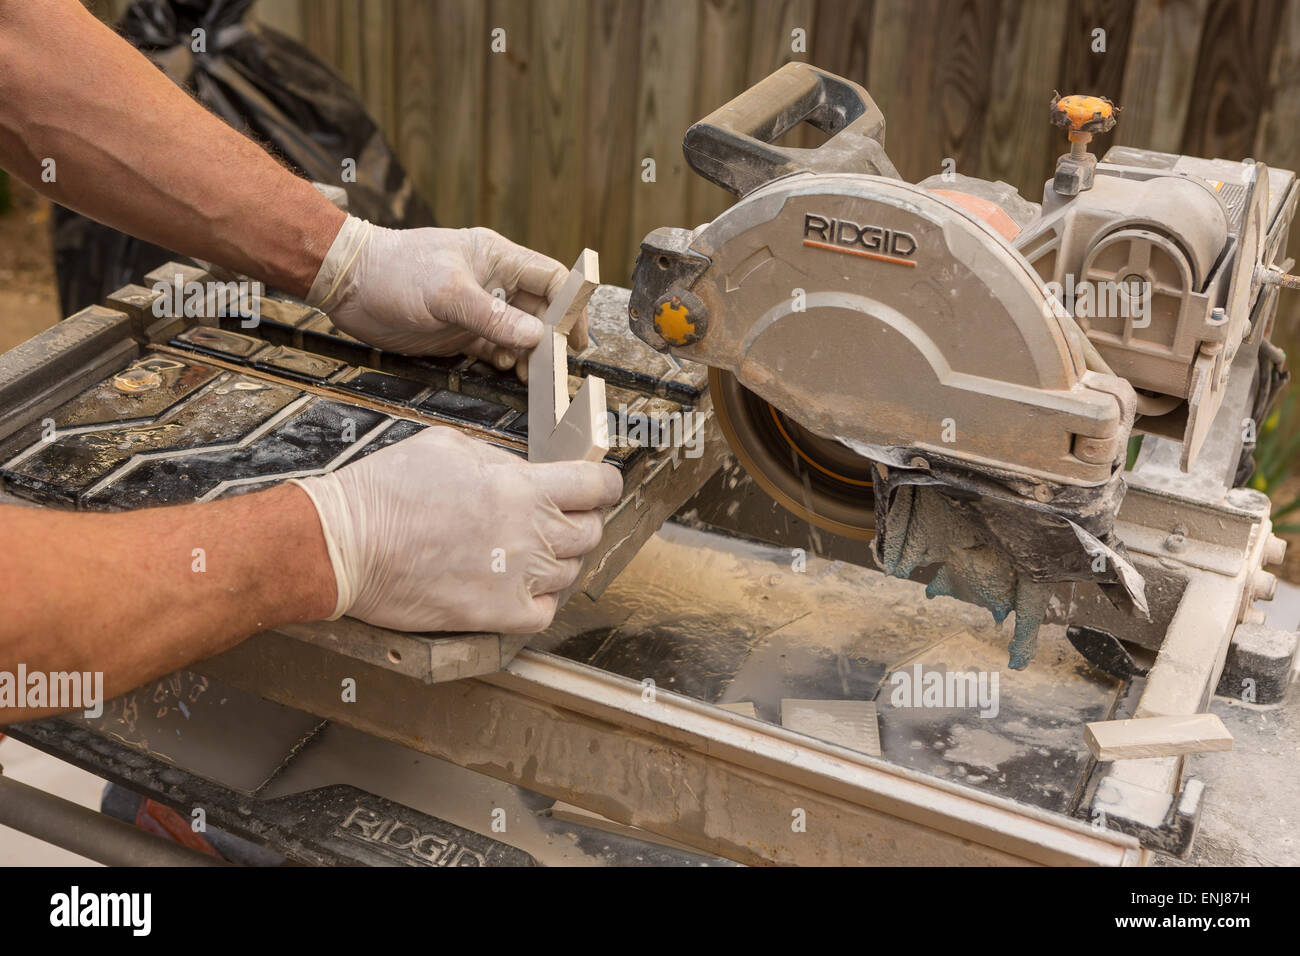 ARLINGTON, VIRGINIA, USA - Arbeiter mit Latex Handschuhen schneidet keramische Fliesen mit einem feuchten Fliesen sah. Stockfoto